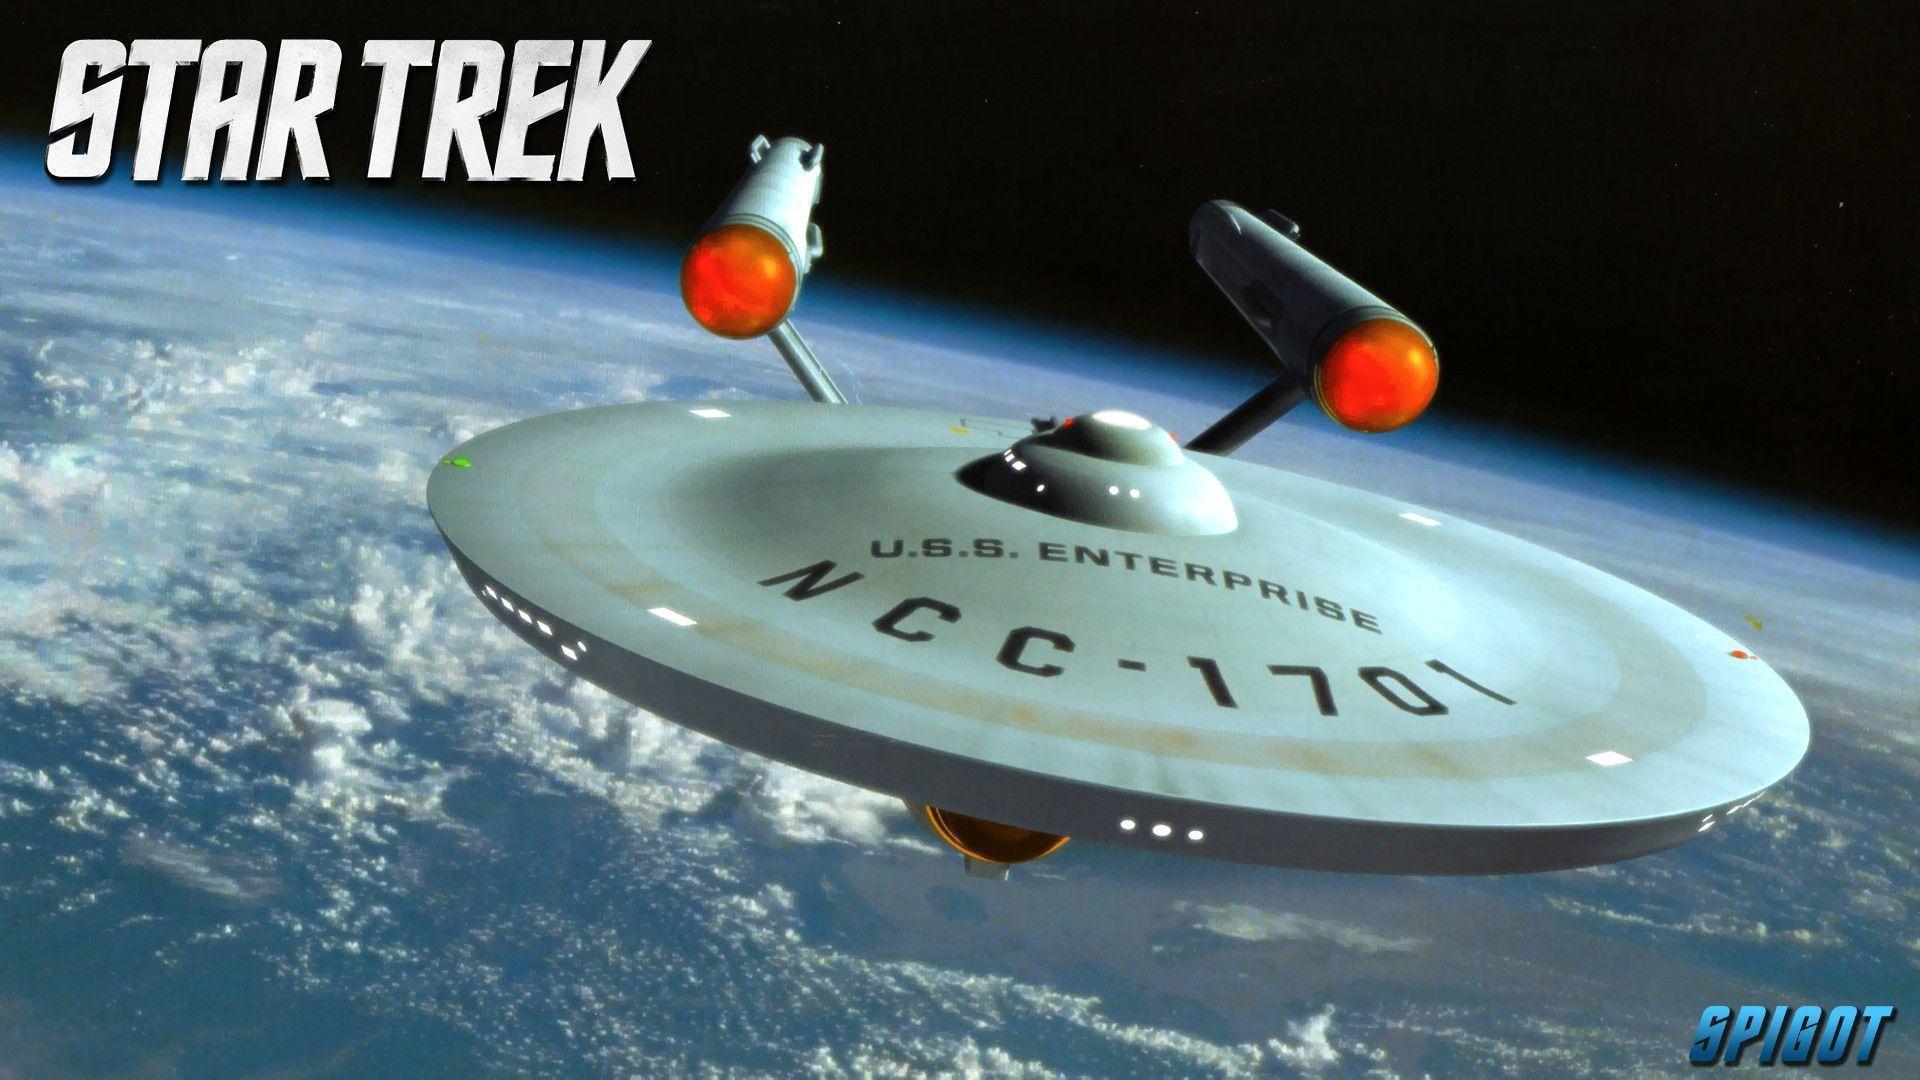 Star Trek Ships Wallpaper. George Spigot&;s Blog